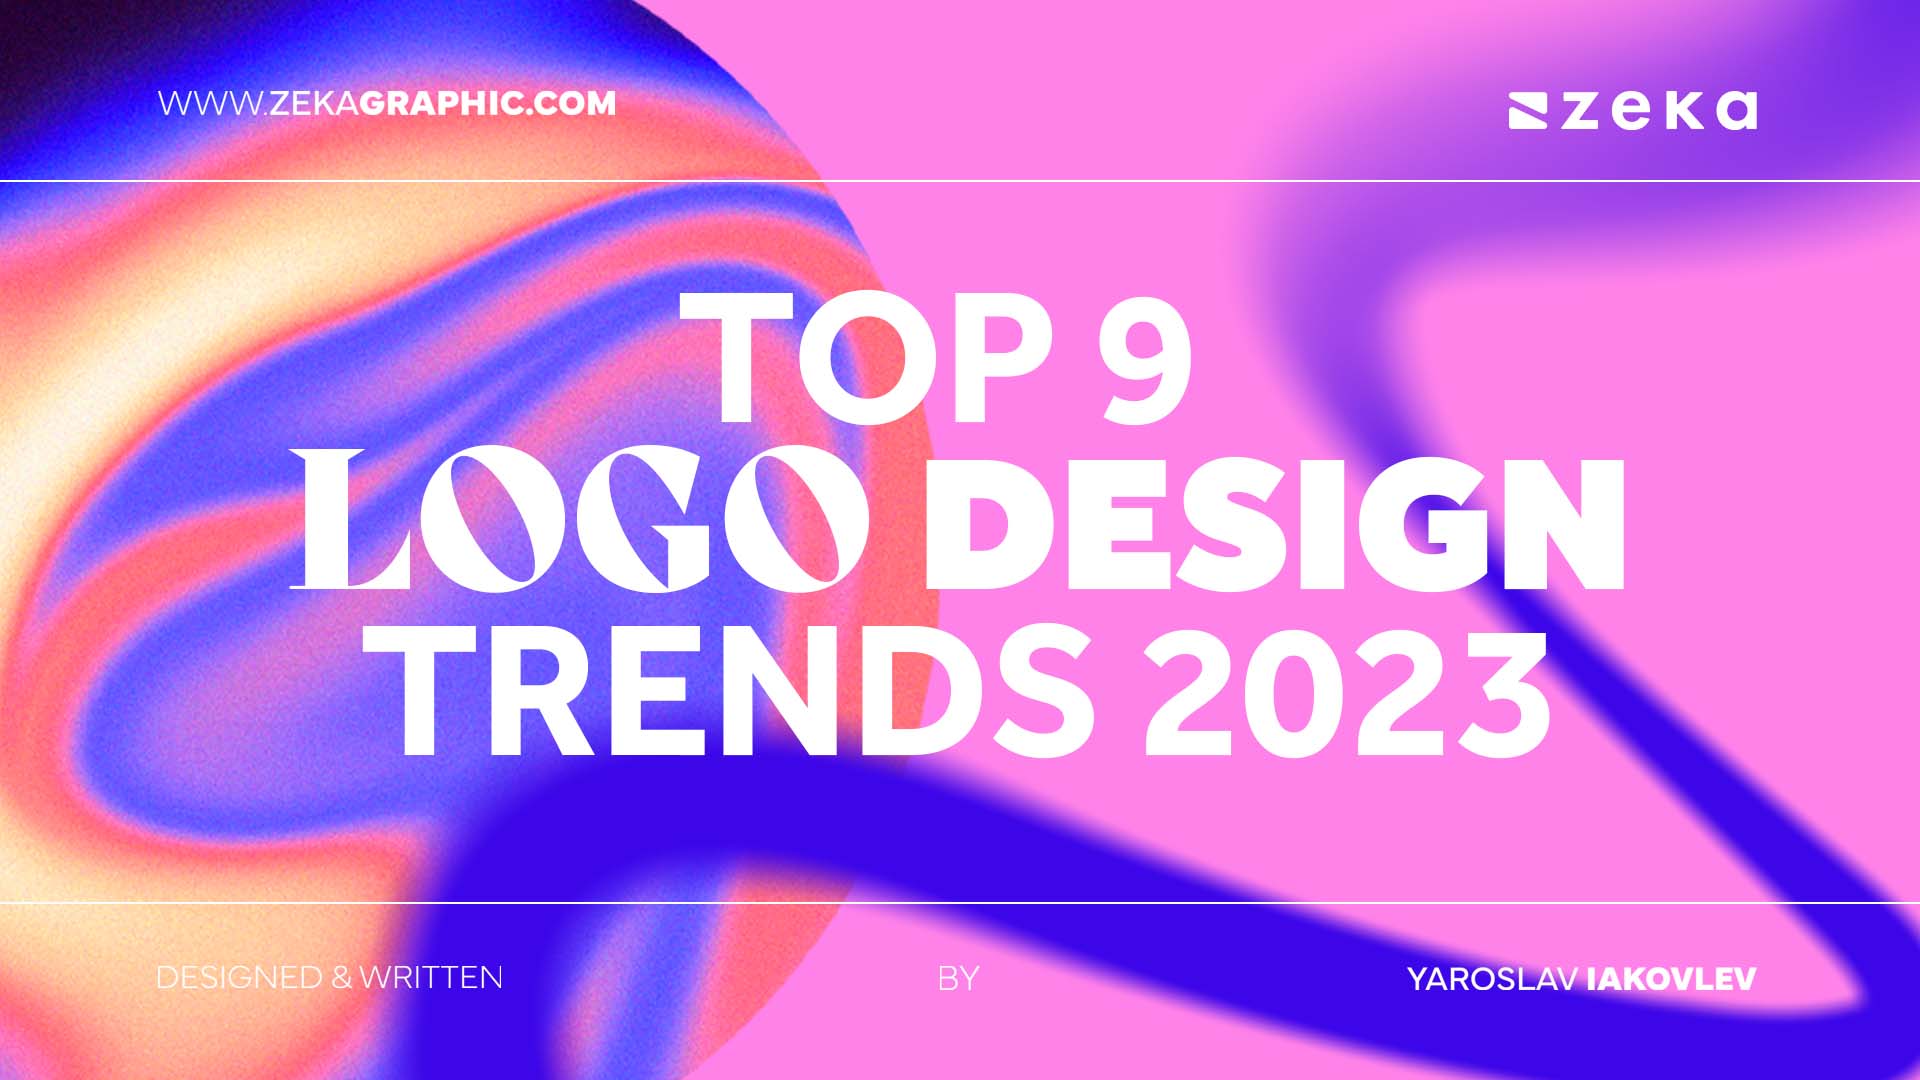 9 Looo Design Trends In 2023 